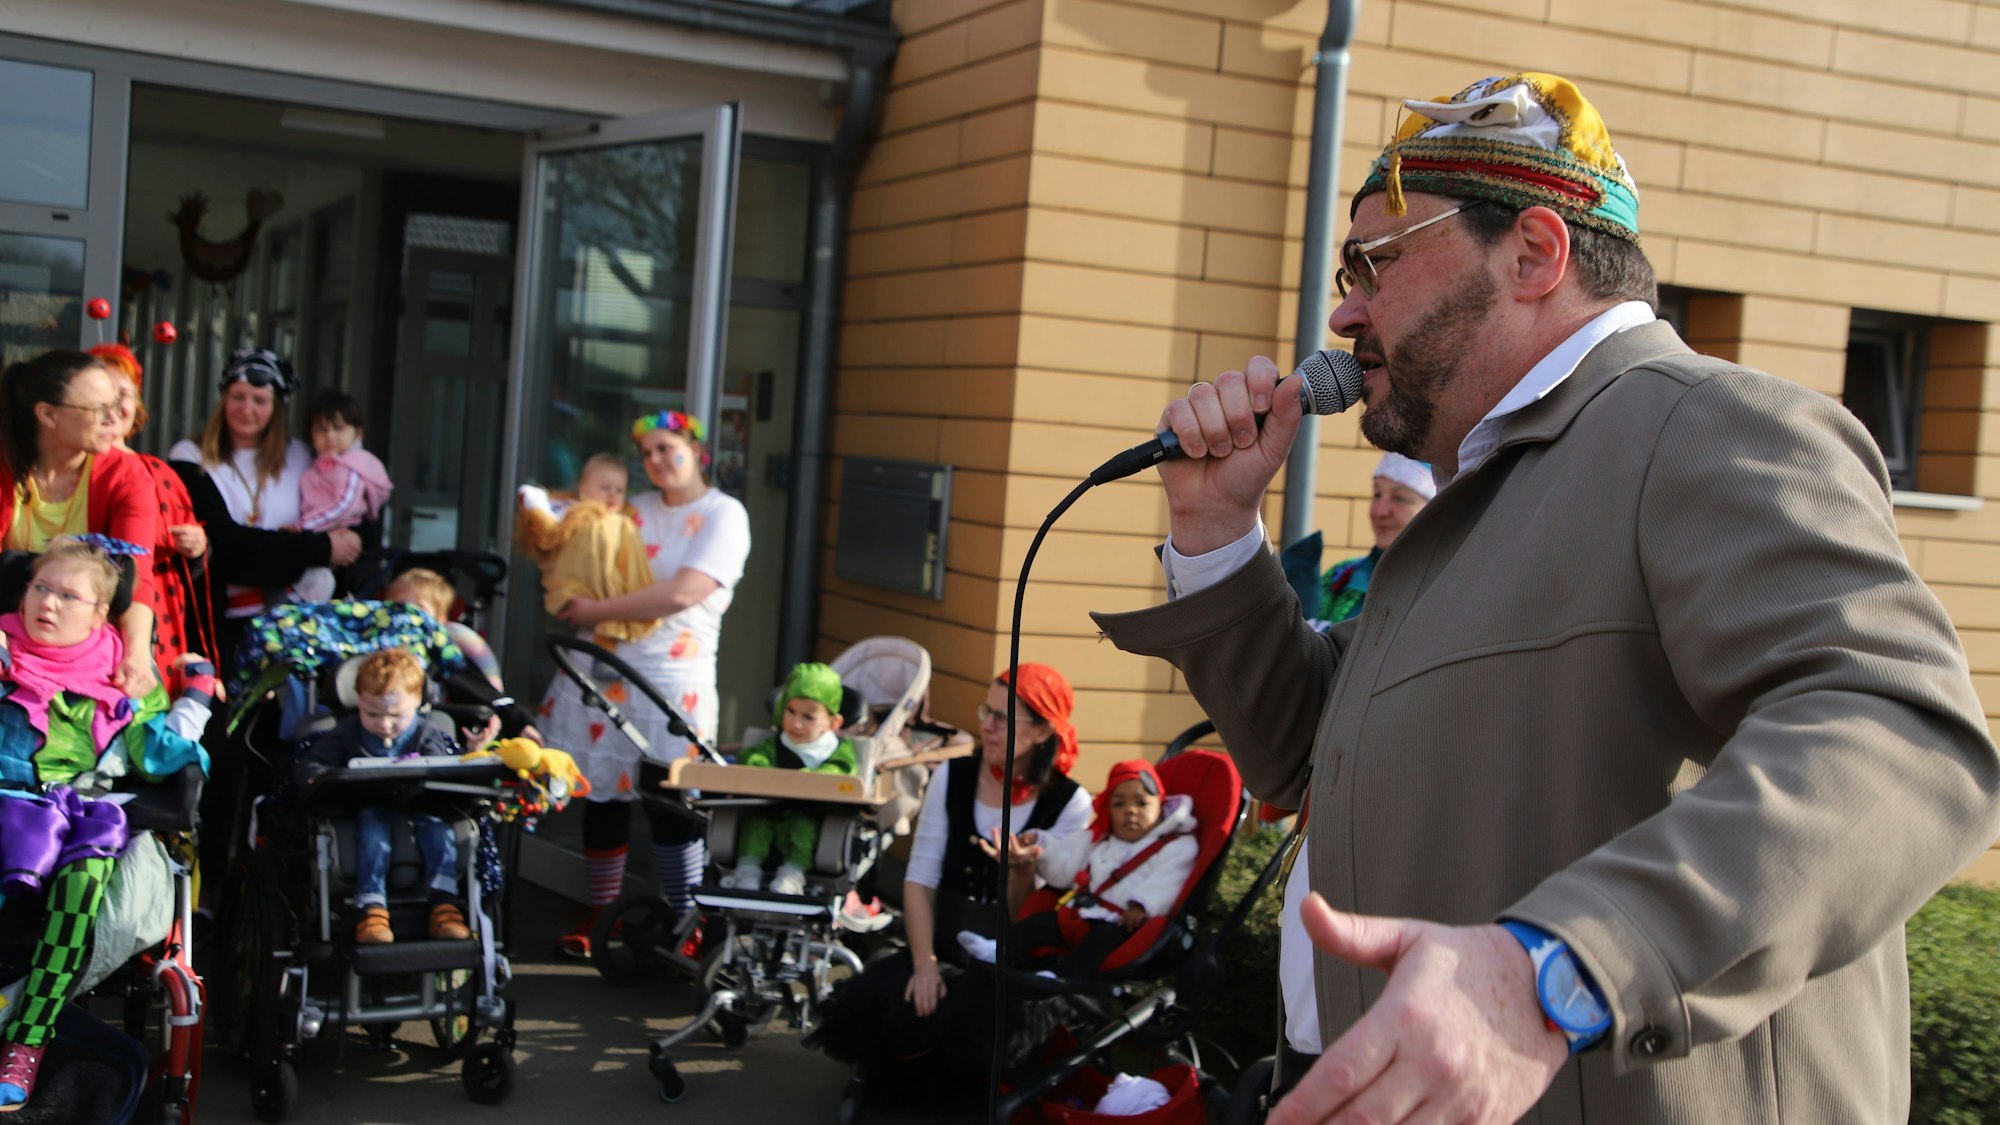 Ein Mann mit bunter Narrenkappe singt in ein Mikrofon, kostümierte Kinder in Rollstühlen und ebenfalls Frauen hören ihm vor einer Glastür eines Hauses zu.